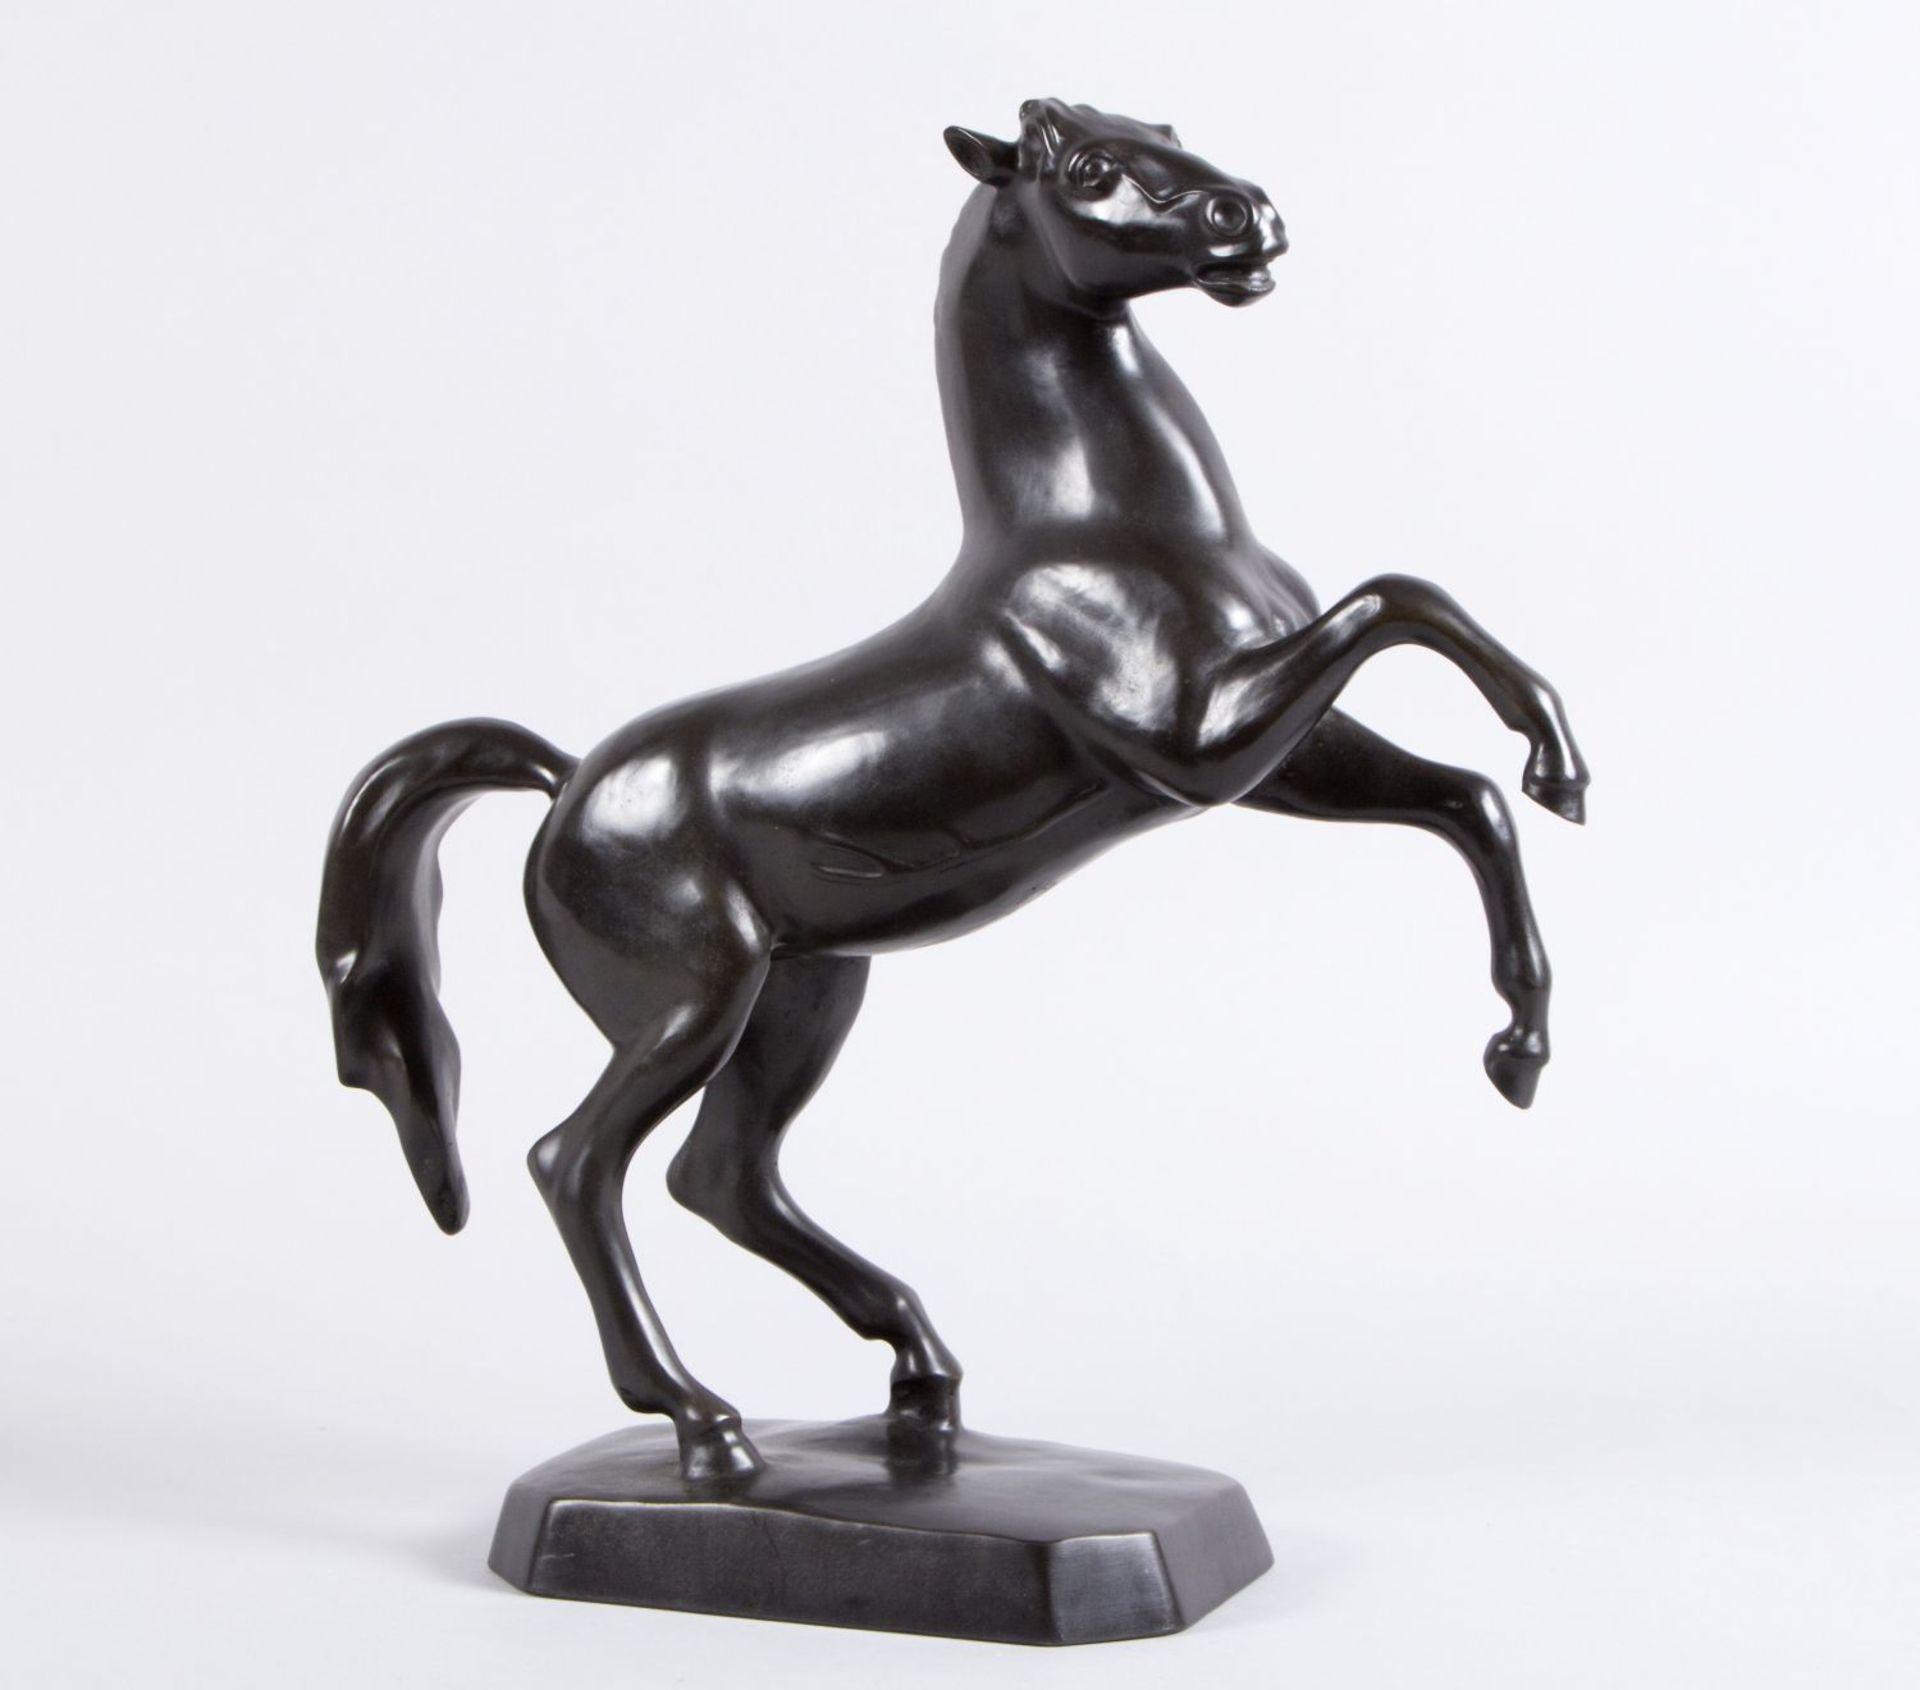 Monogrammist BW Steigendes Pferd. Bronze, schwarz patiniert. Bez. 1991. H. 42,5 cm.